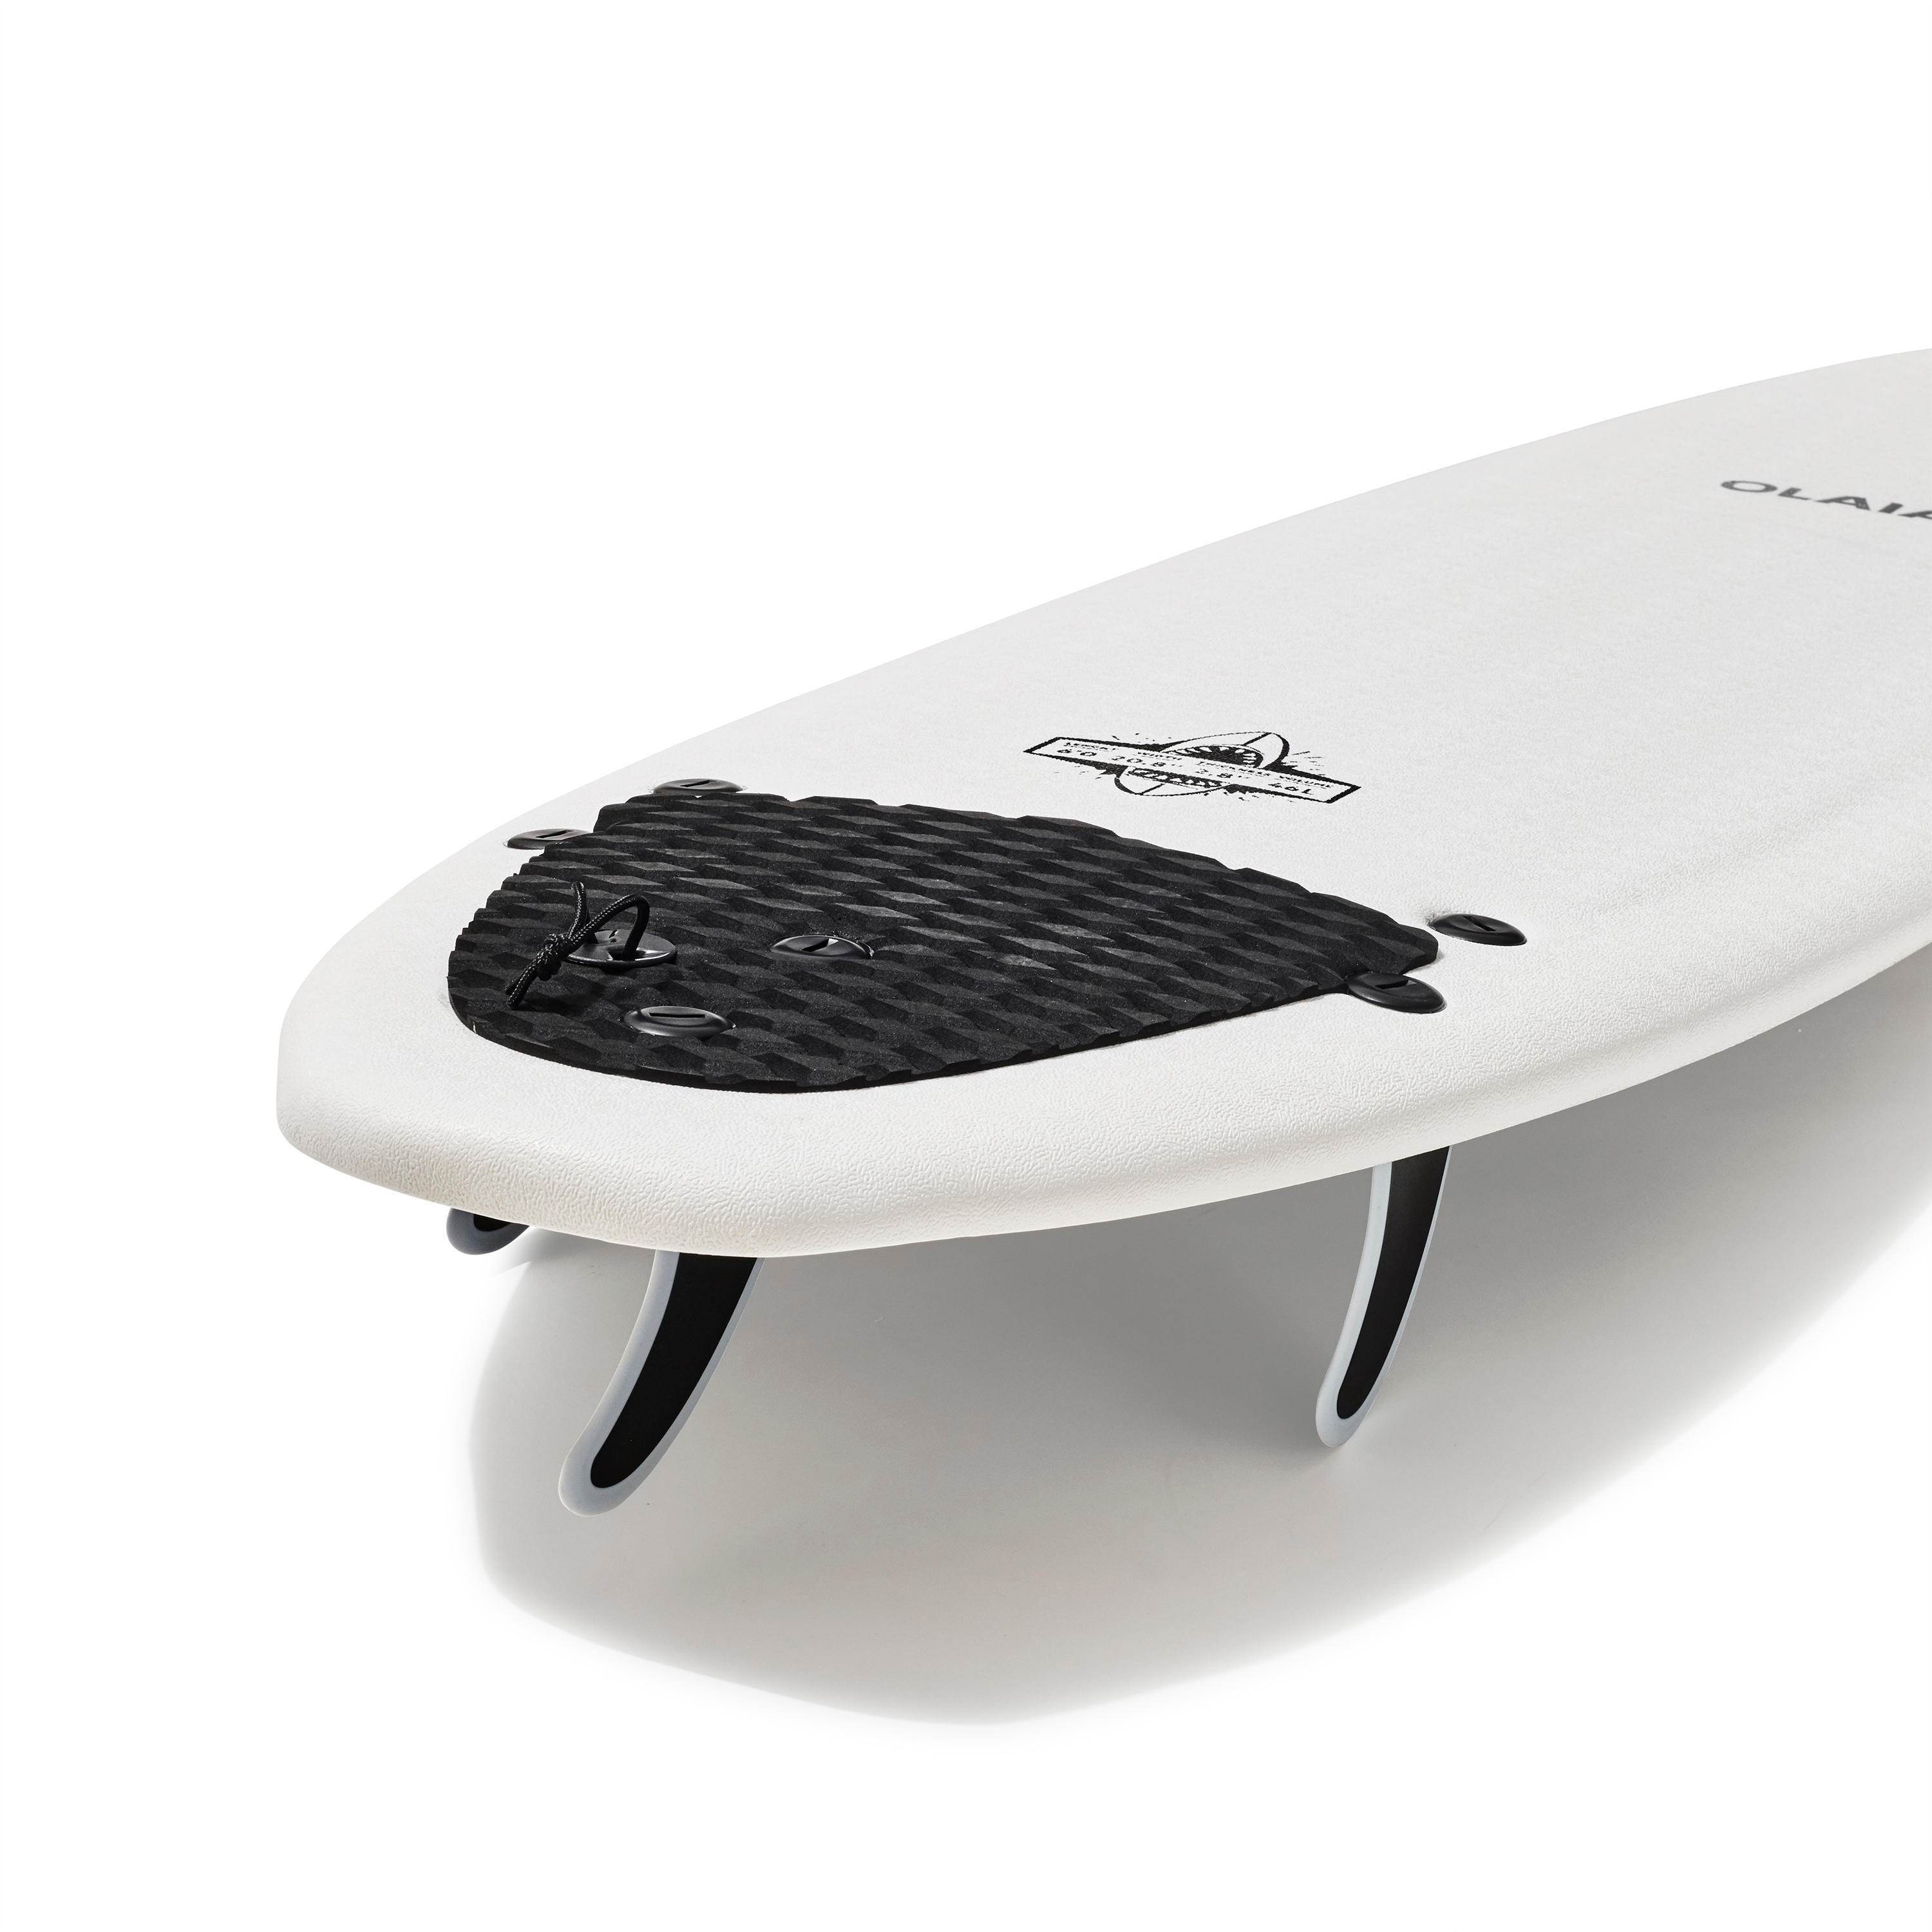 FOAM SURFBOARD 900 6' with 3 fins. 10/12